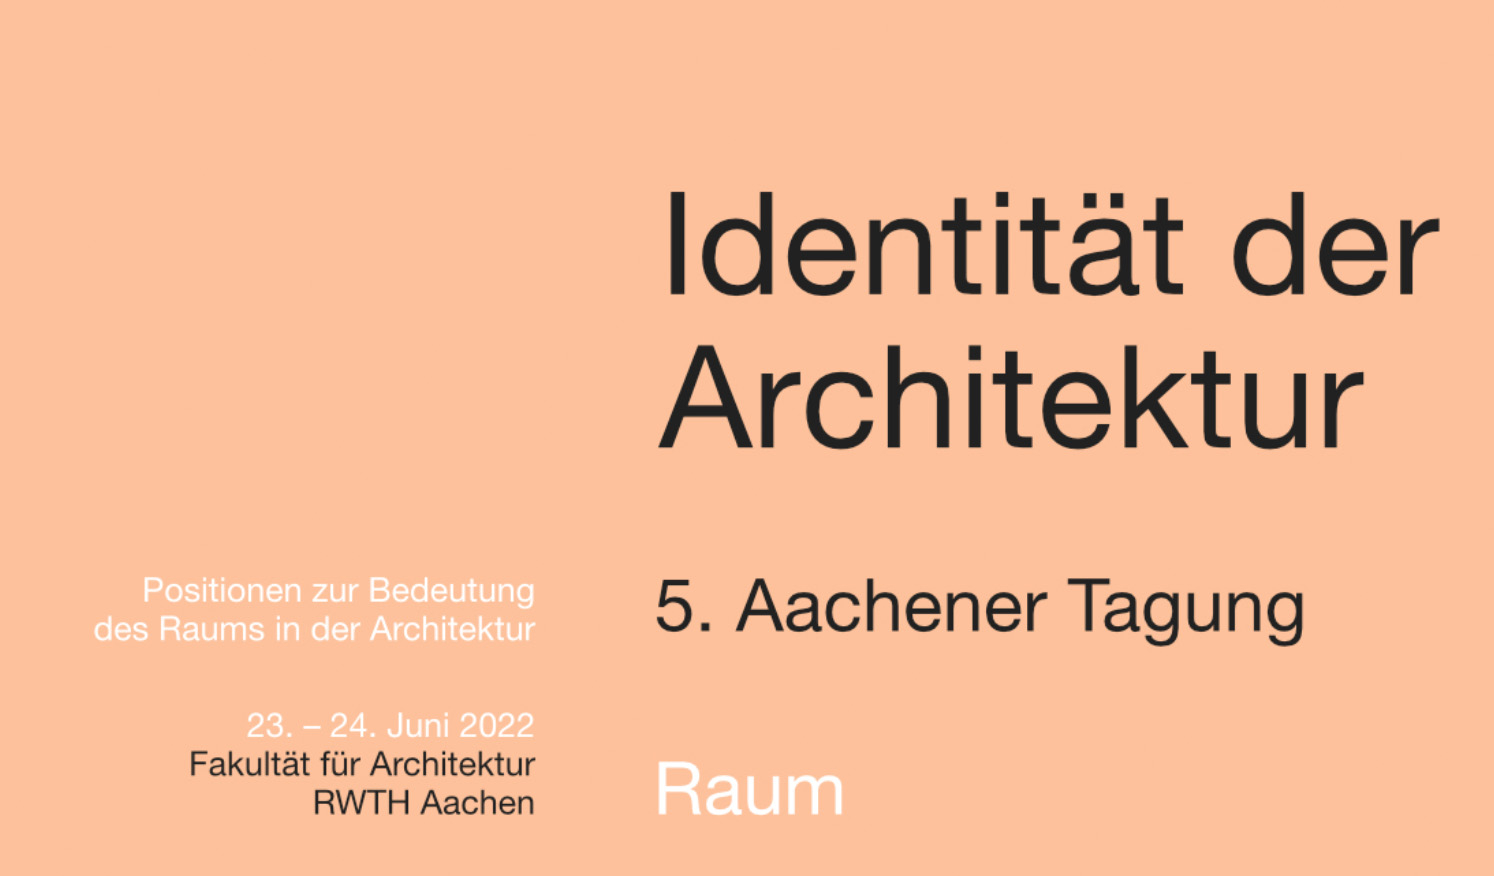 identitat_der_architektur_aacherner_tagung_-_raum.jpg